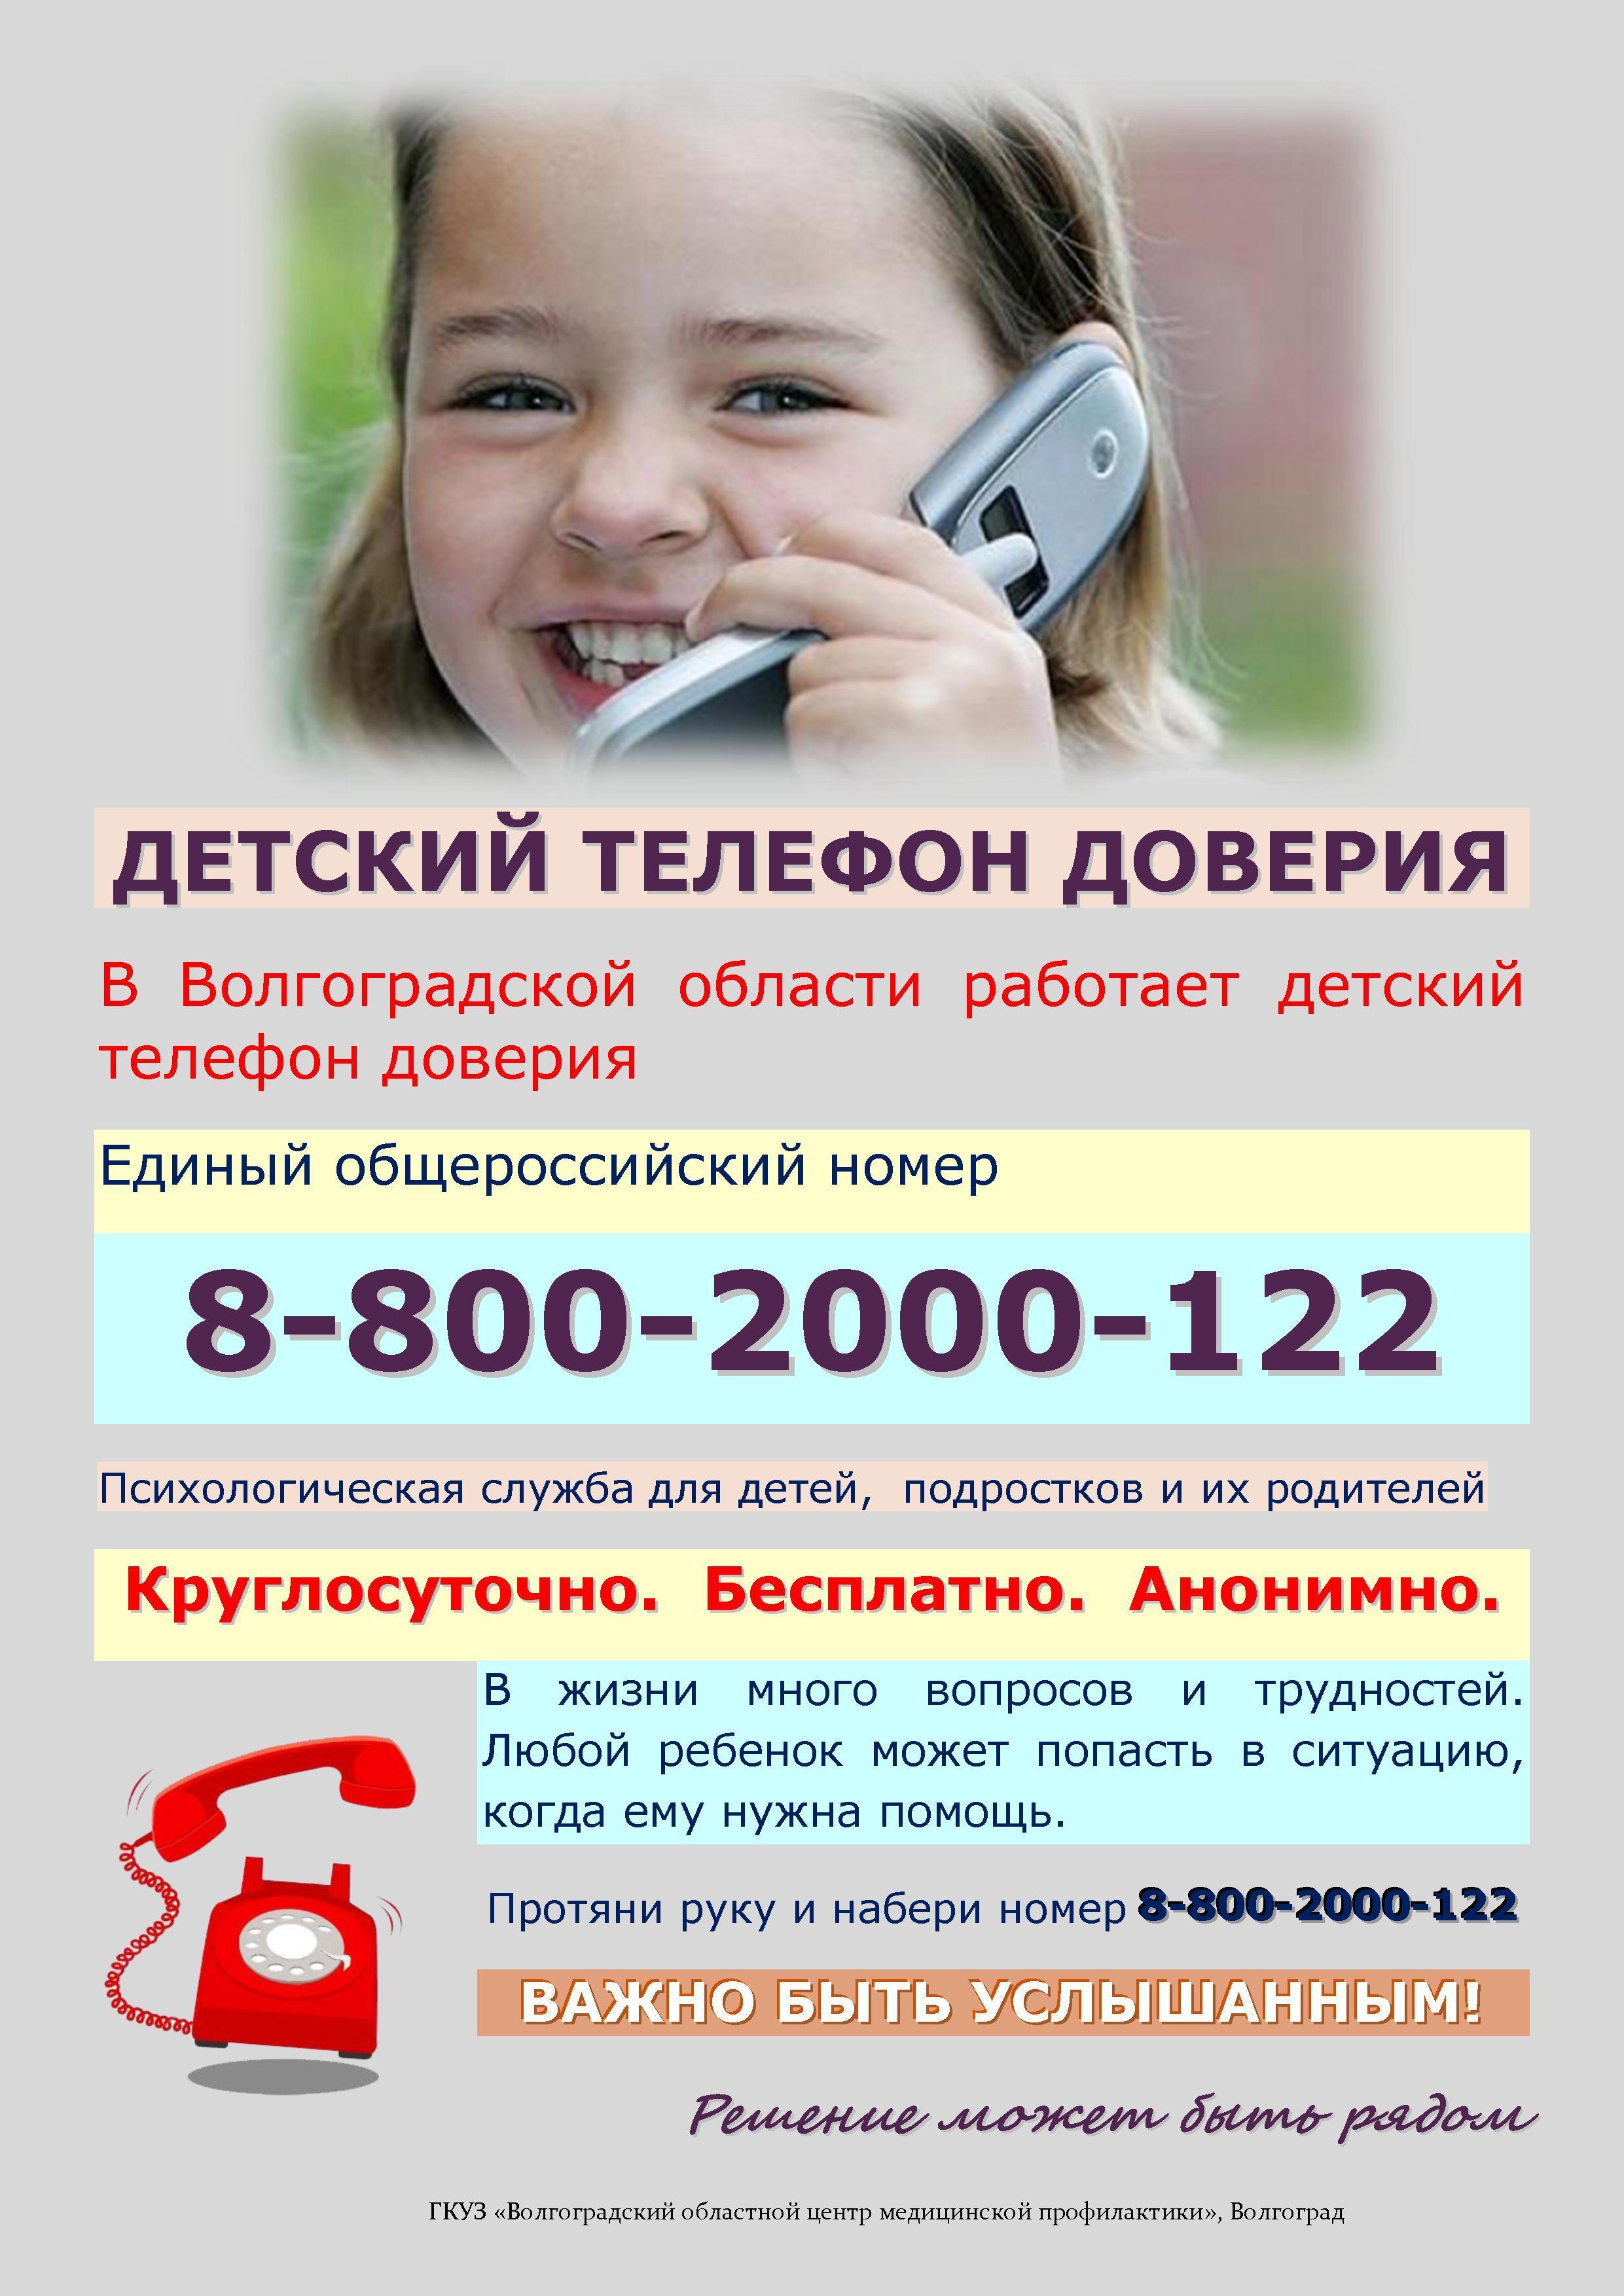 Беседа телефон доверия. Телефон доверия. Детский телефон доверия. Телефон доверия для детей подростков и их родителей. Номер телефона доверия для детей.